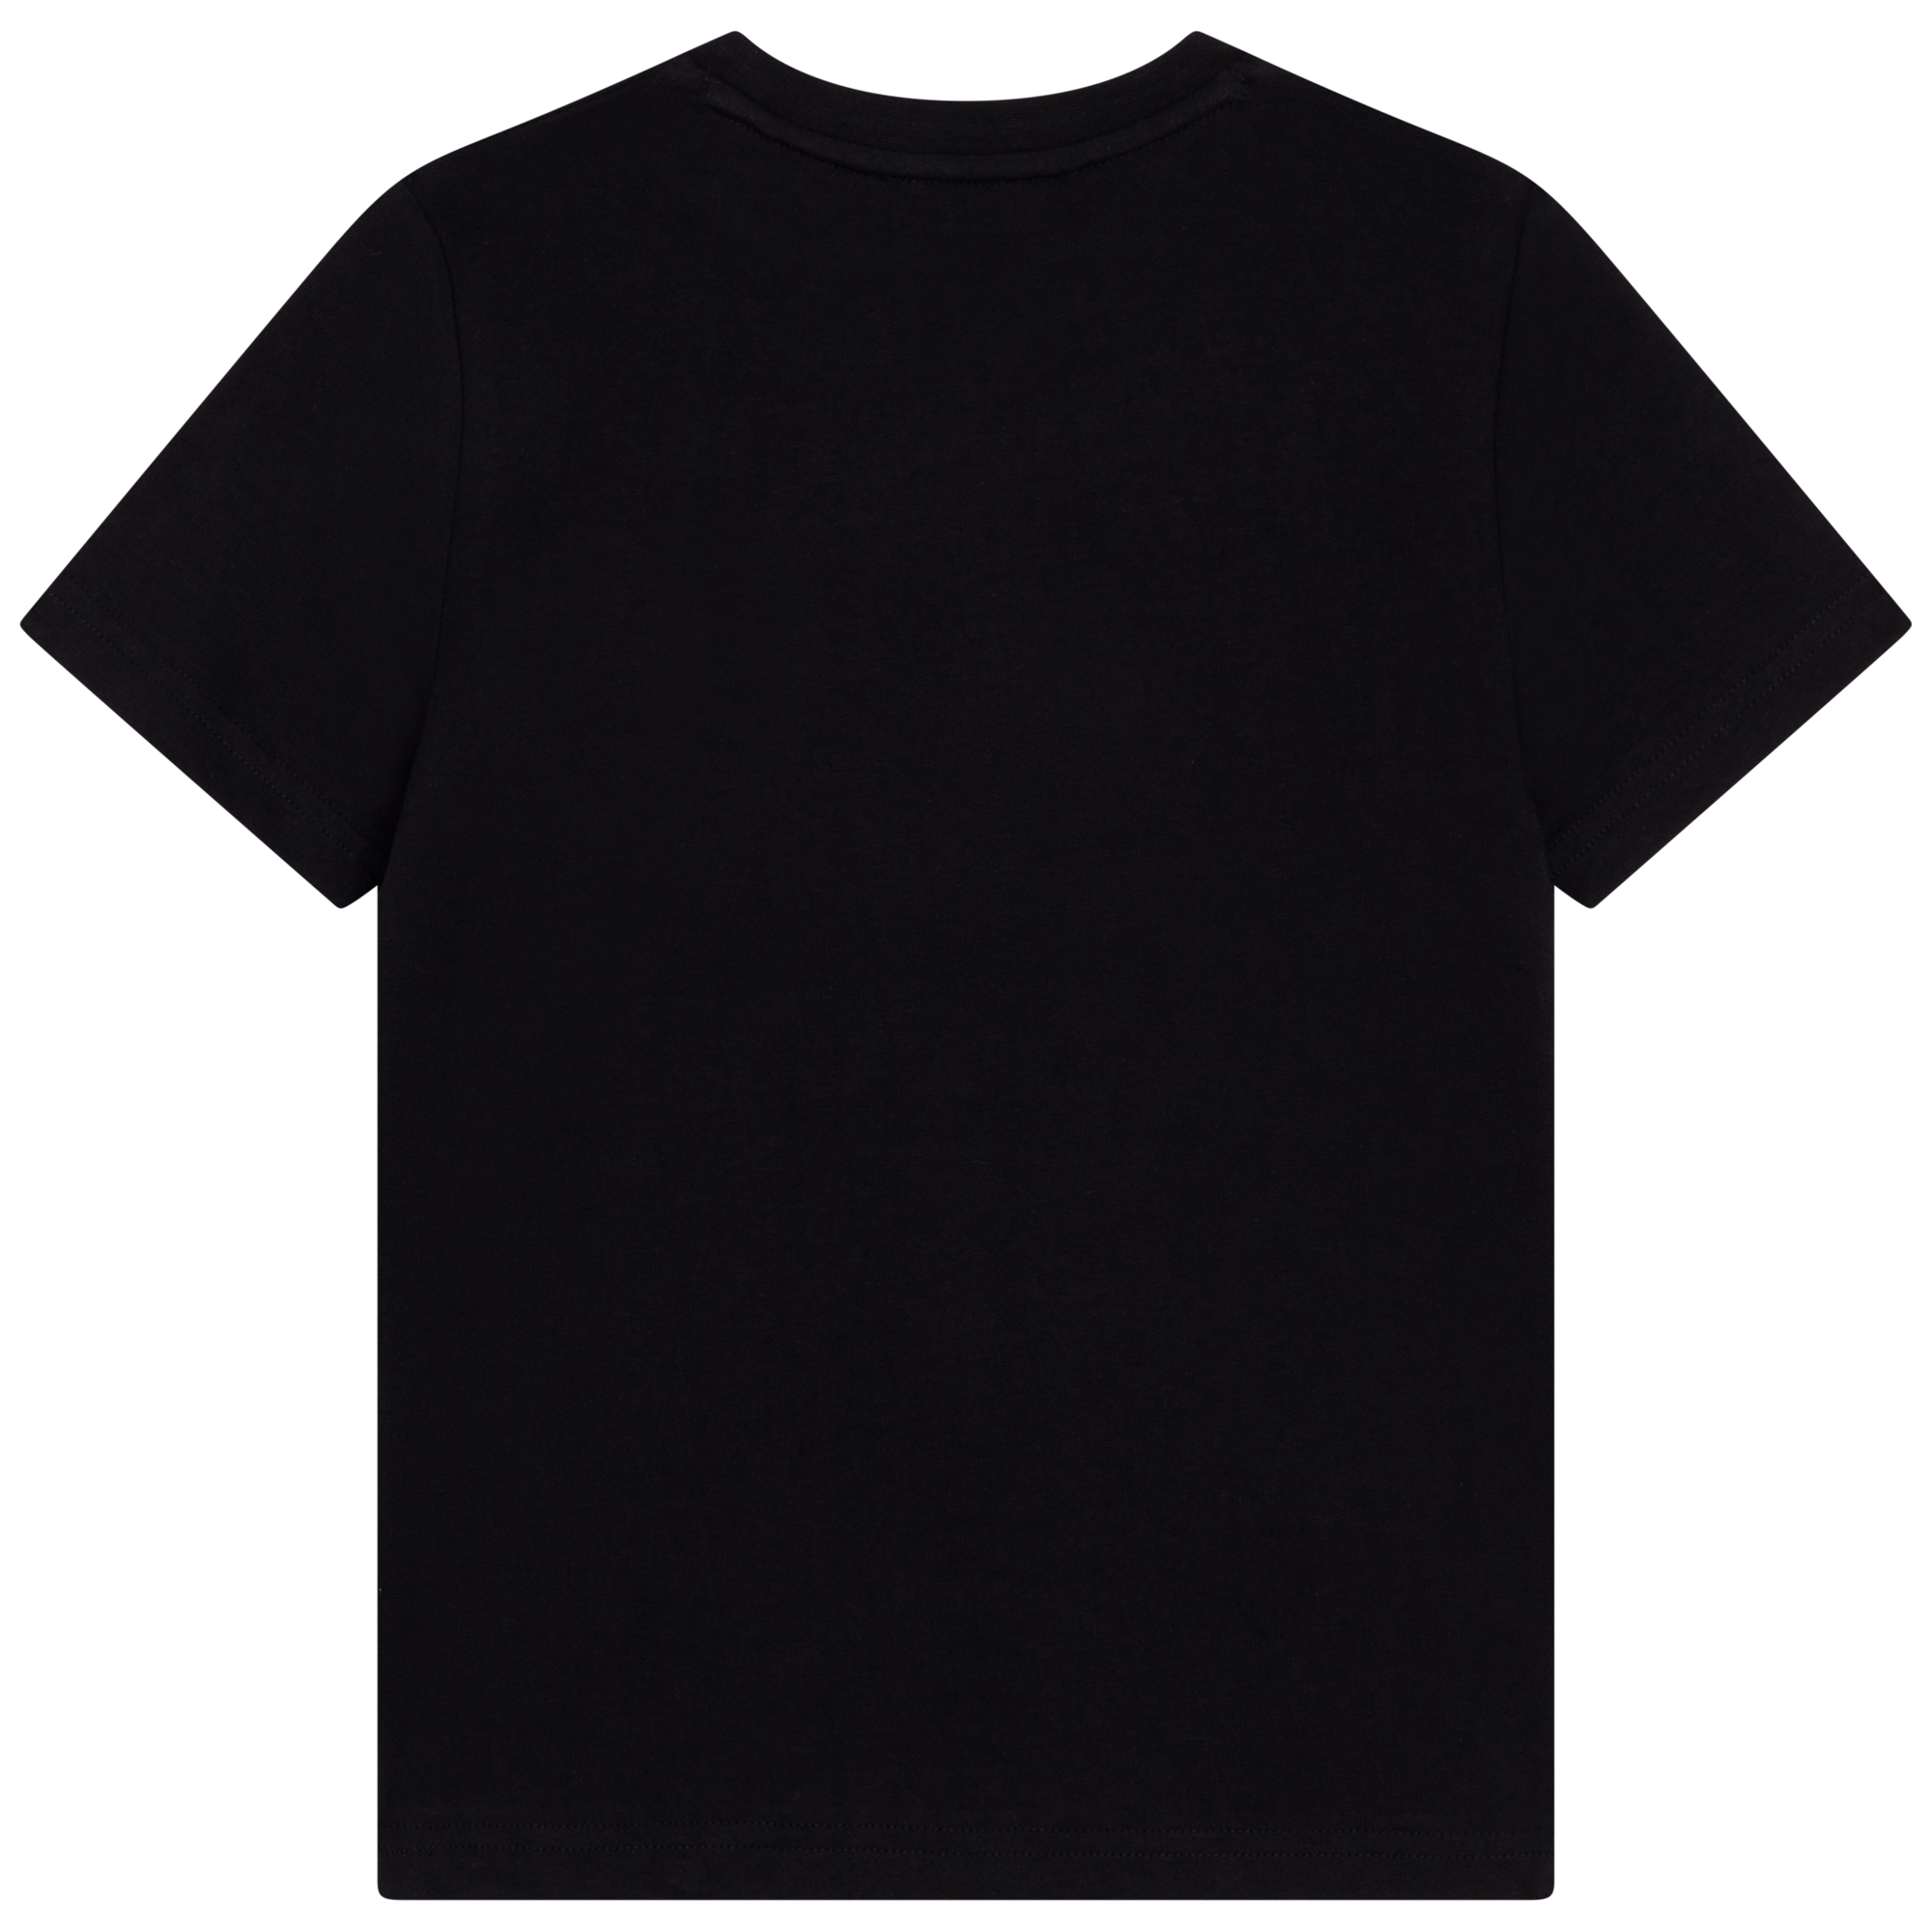 T-Shirt DKNY Für JUNGE